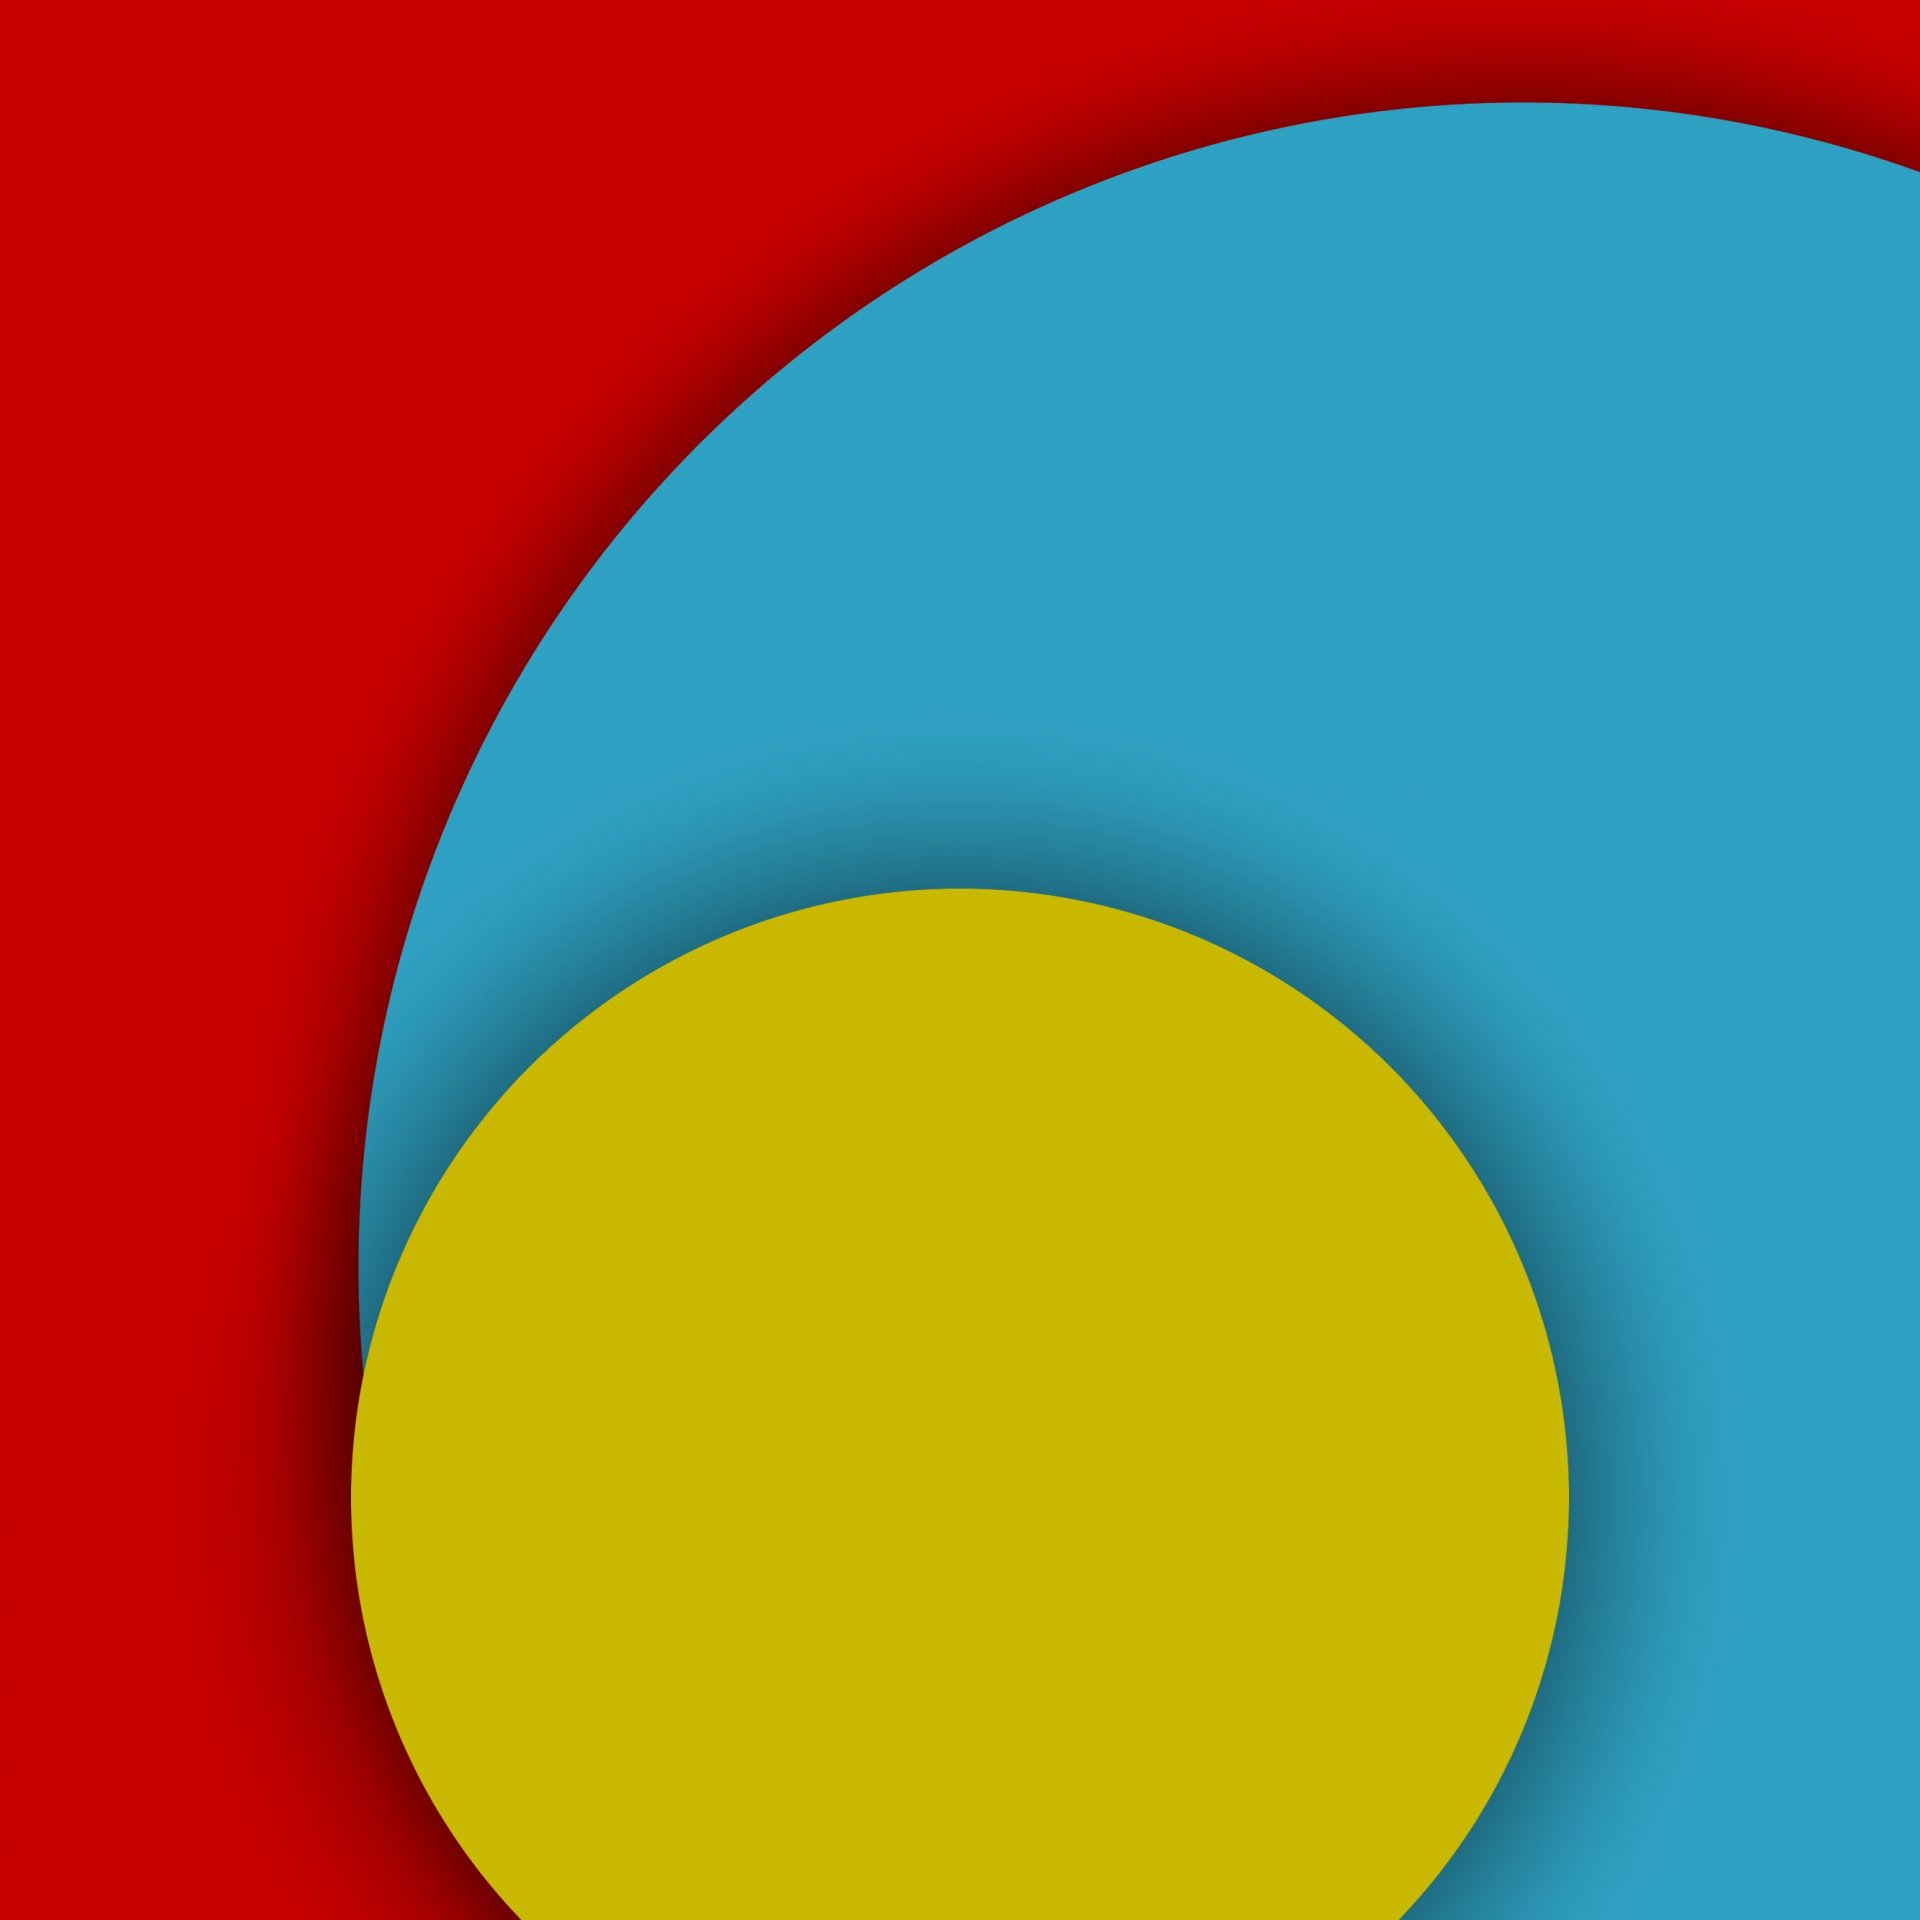 android 5.0 lollipop материал дизайн линии абстракция полосы цвета круги полукруг красные желтый синий